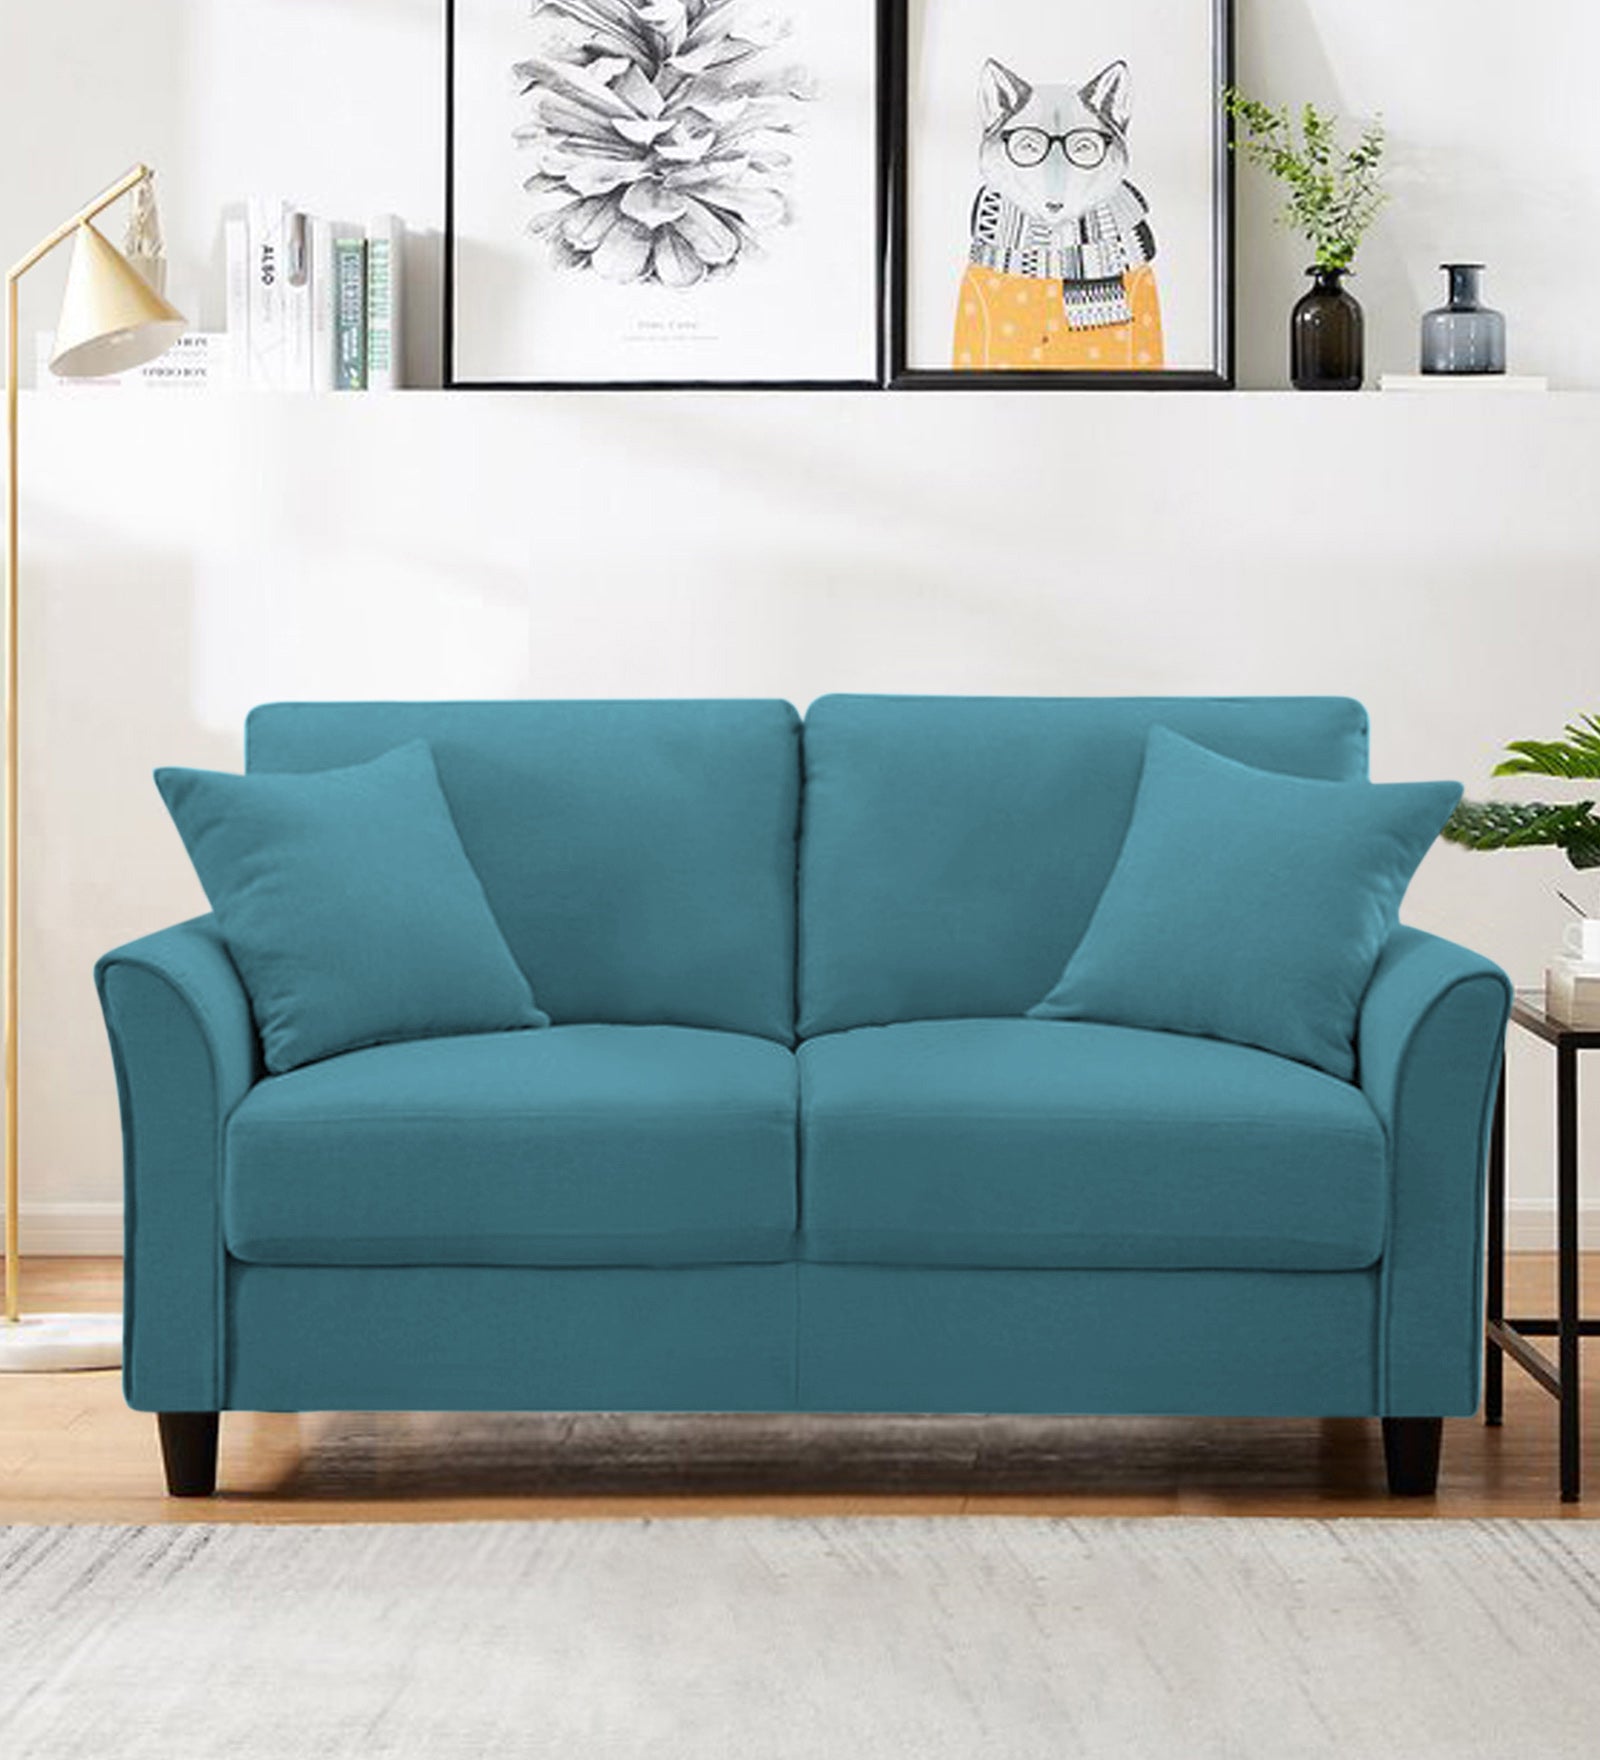 Daroo Velvet 2 Seater Sofa In Aqua Blue Colour